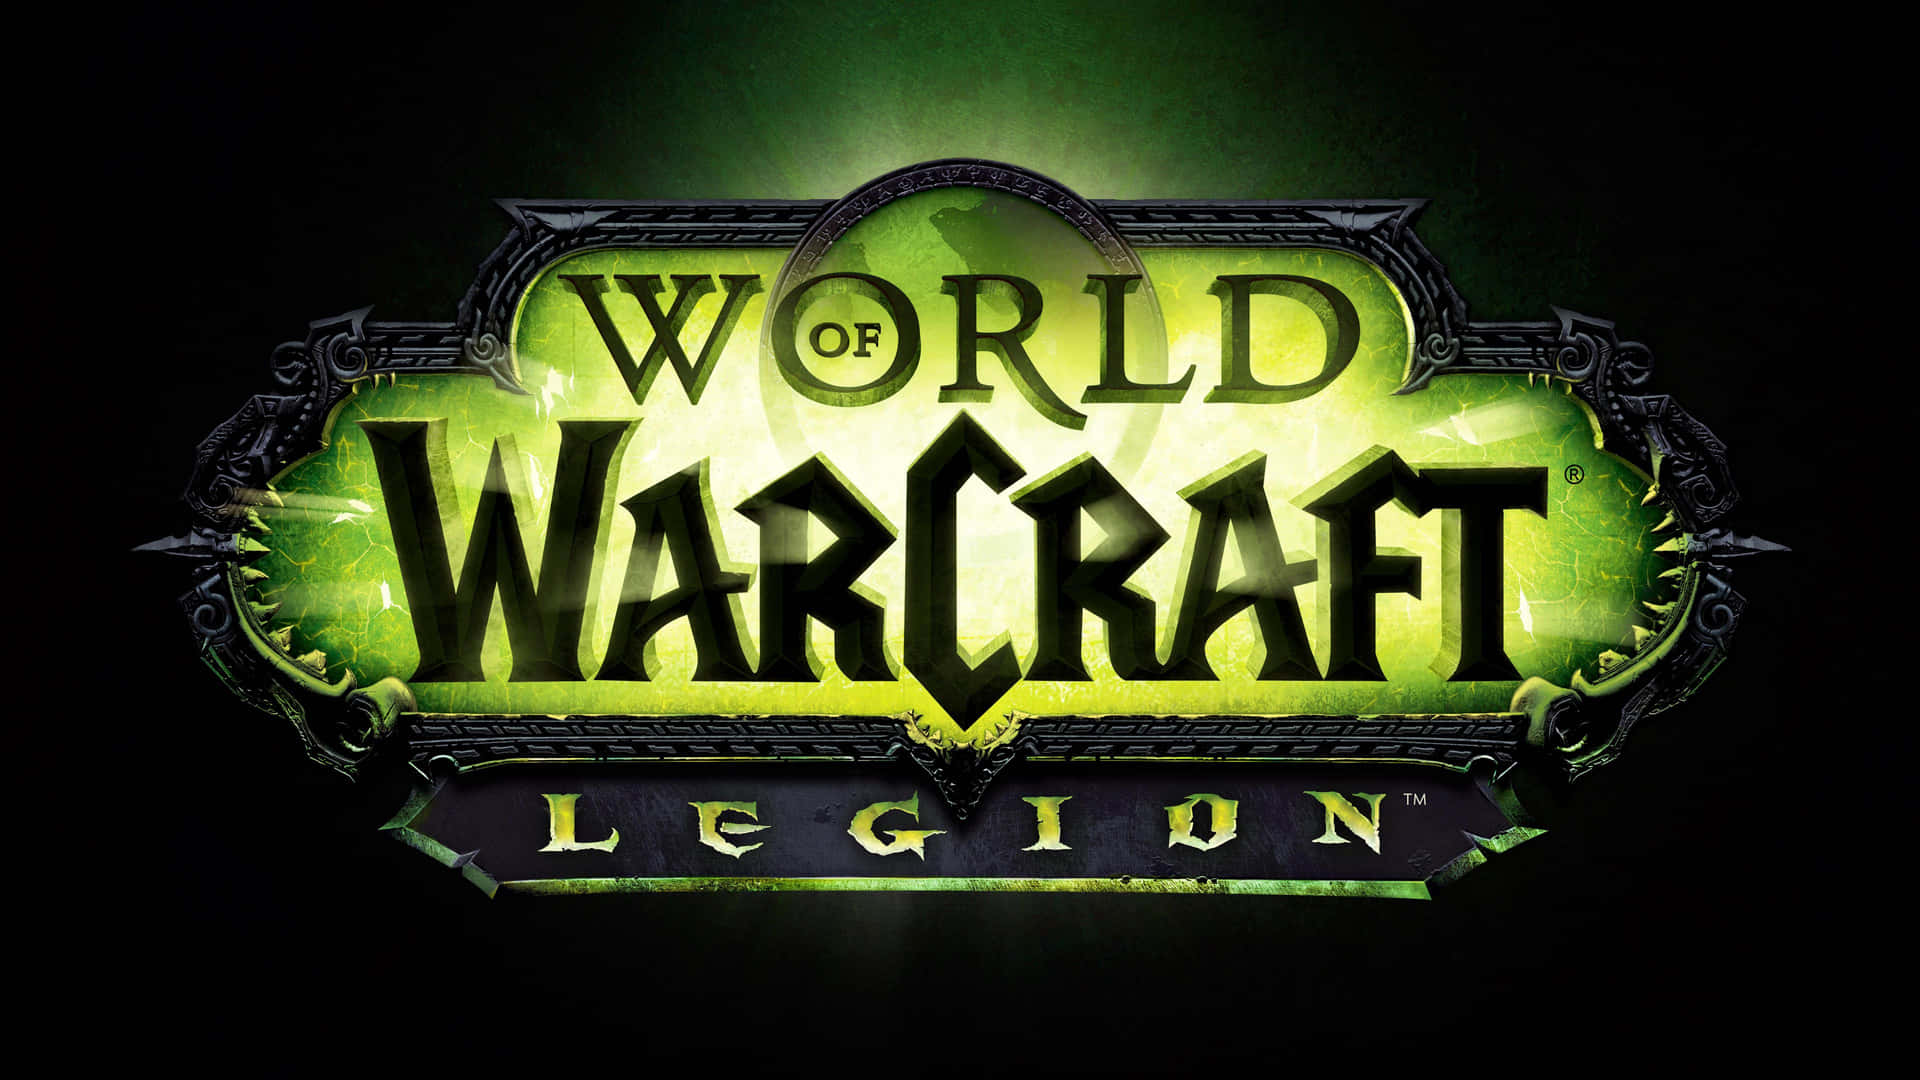 Weltvon Warcraft Legion Wow 4k Wallpaper